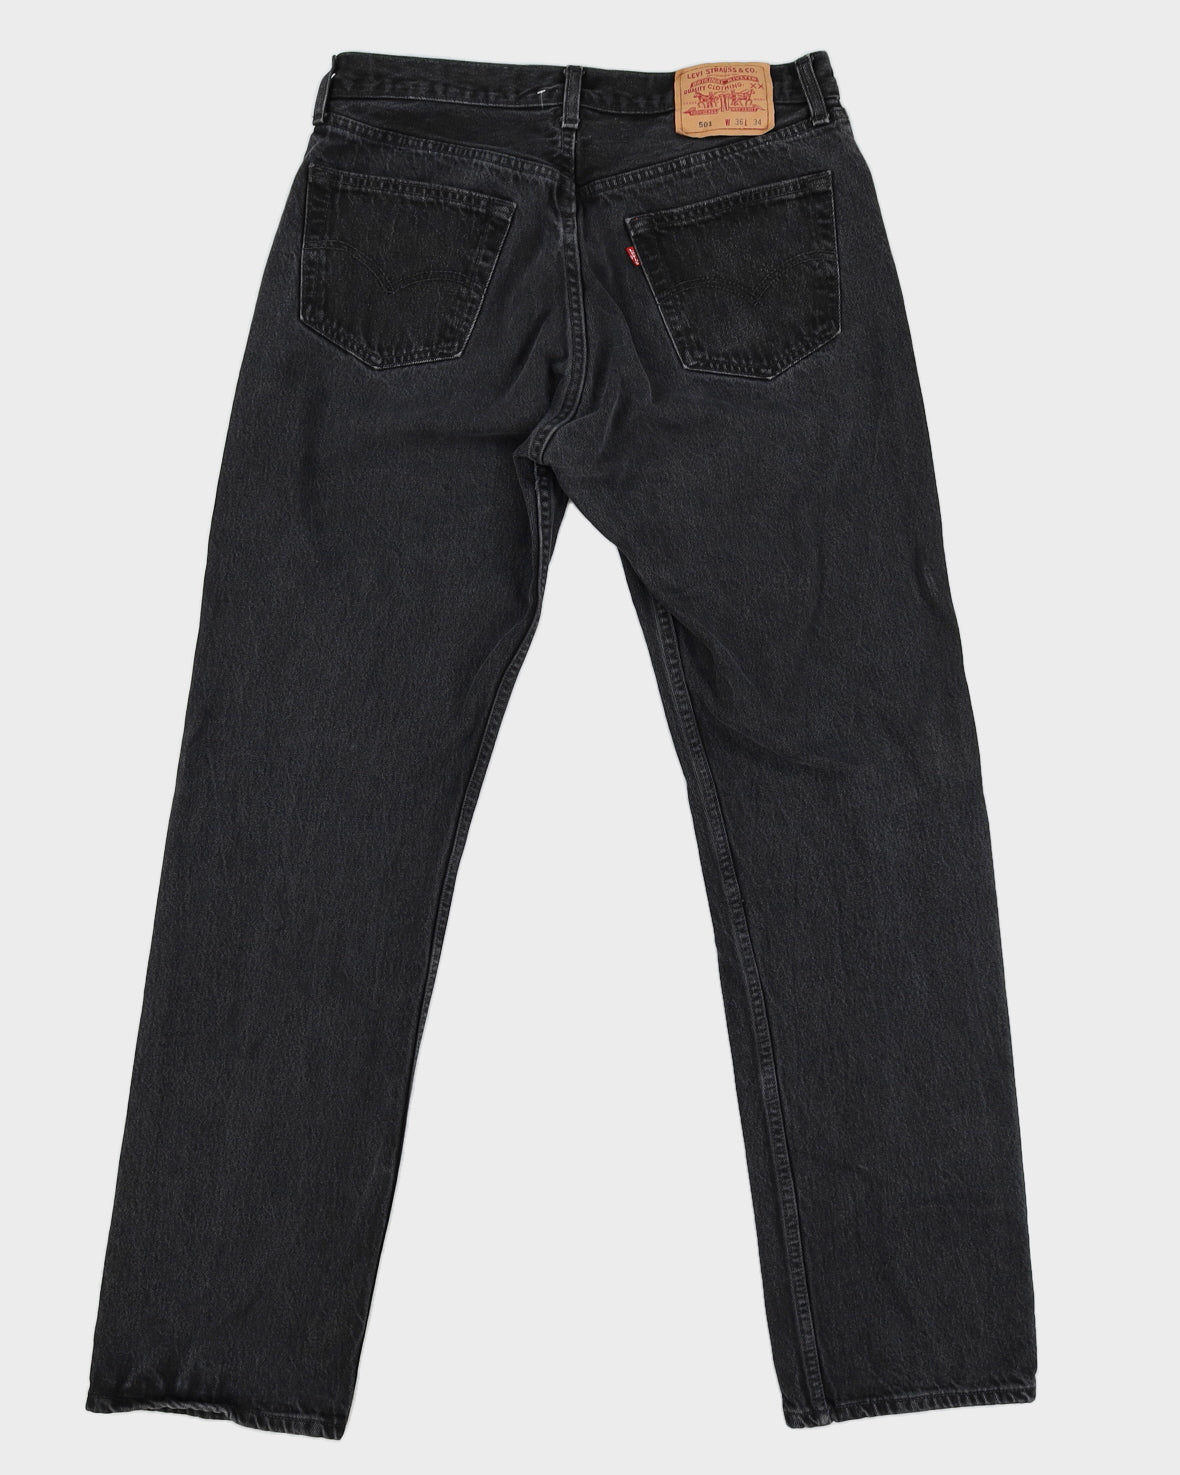 Vintage 90s Levi's 501 Washed Black Denim Jeans - W32